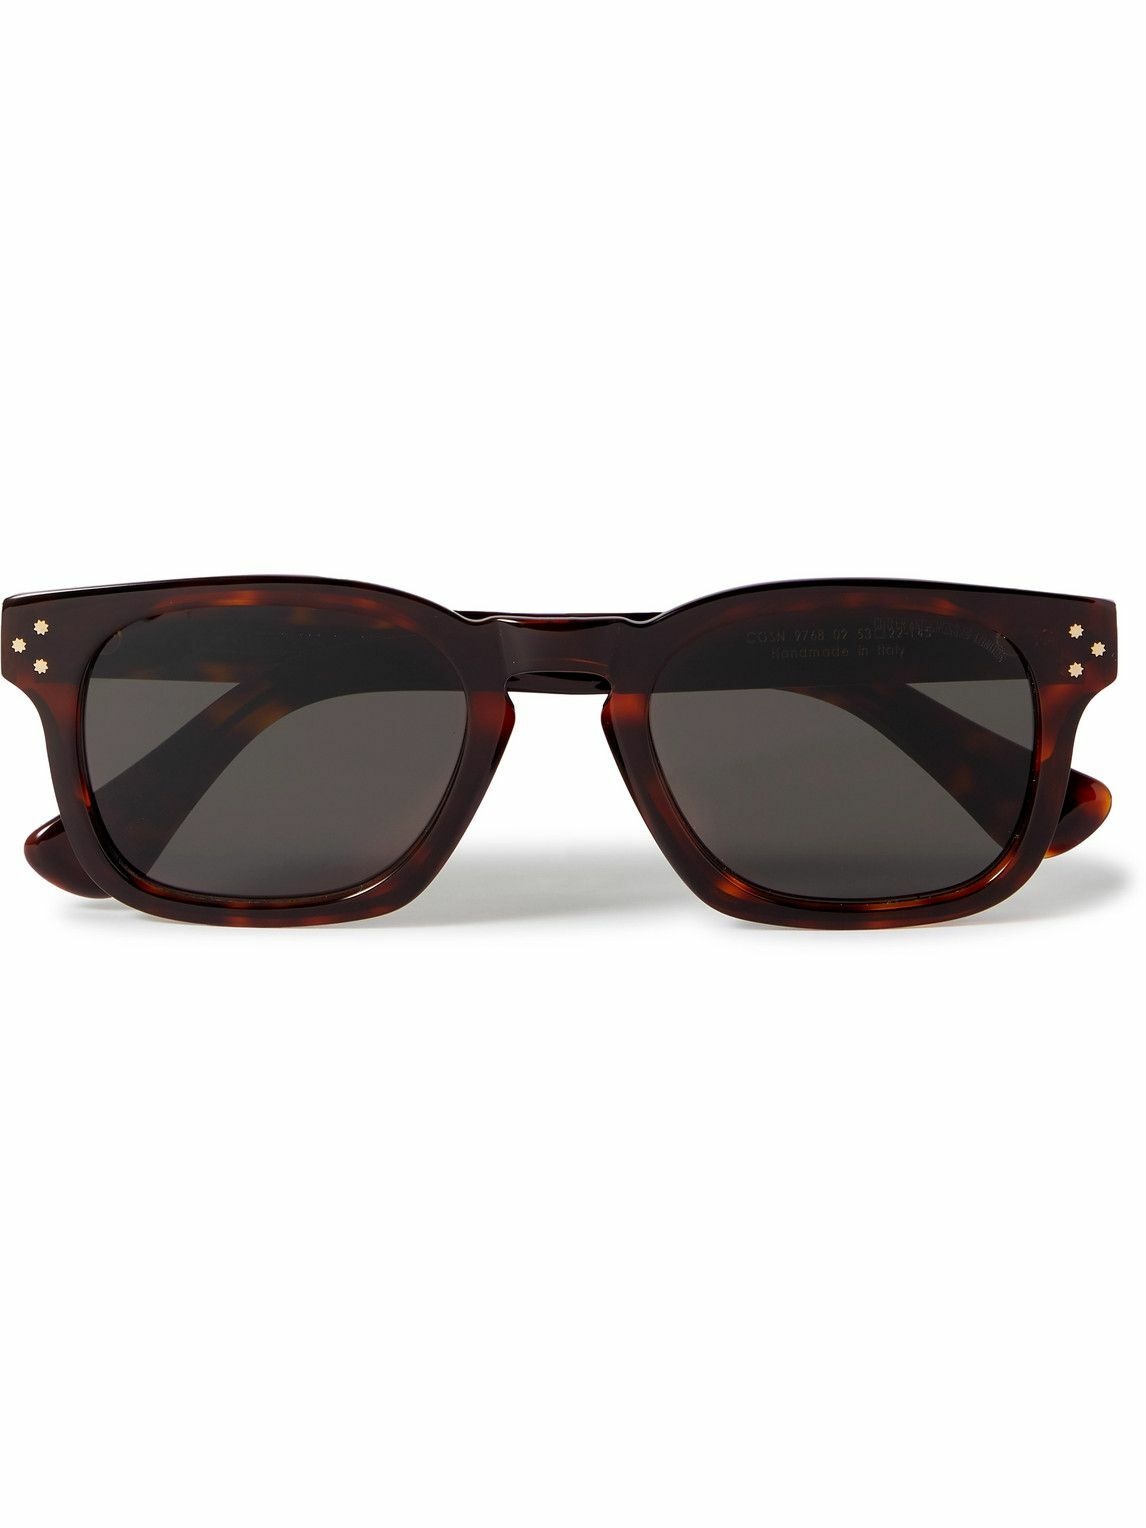 Cutler and Gross - 9768 Square-Frame Tortoiseshell Acetate Sunglasses ...